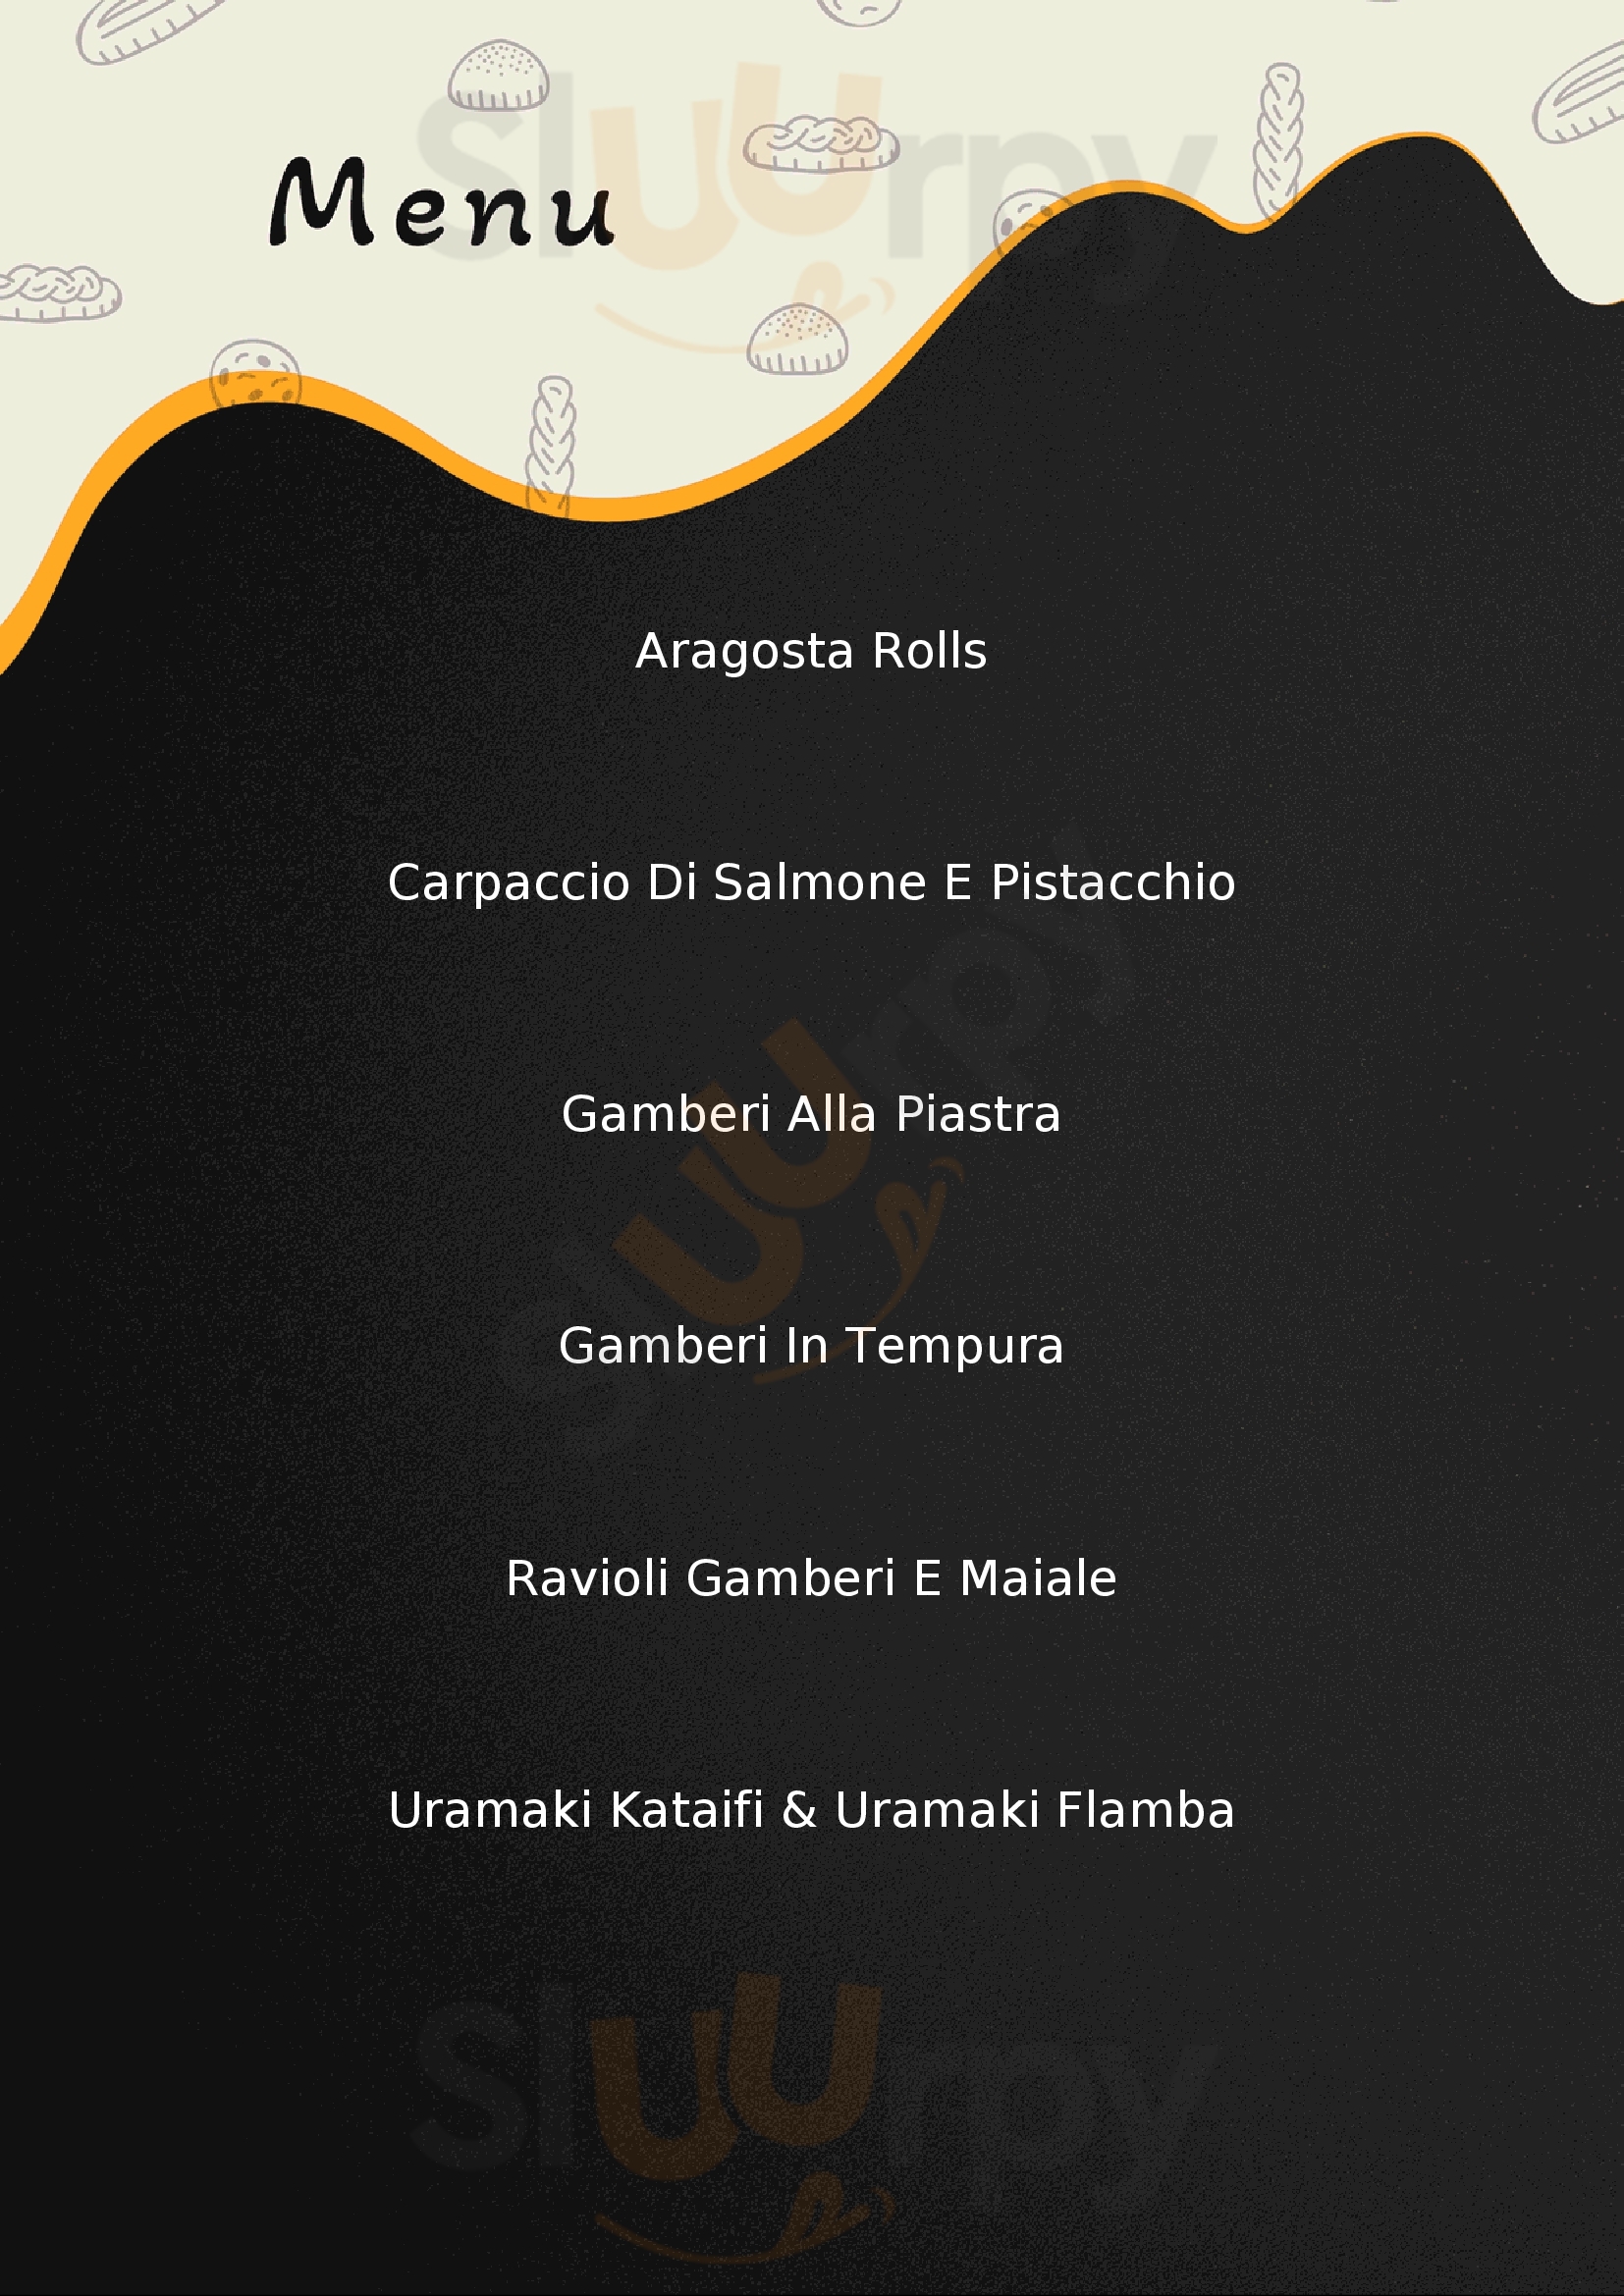 One Sushi Restaurant Castelvetrano menù 1 pagina